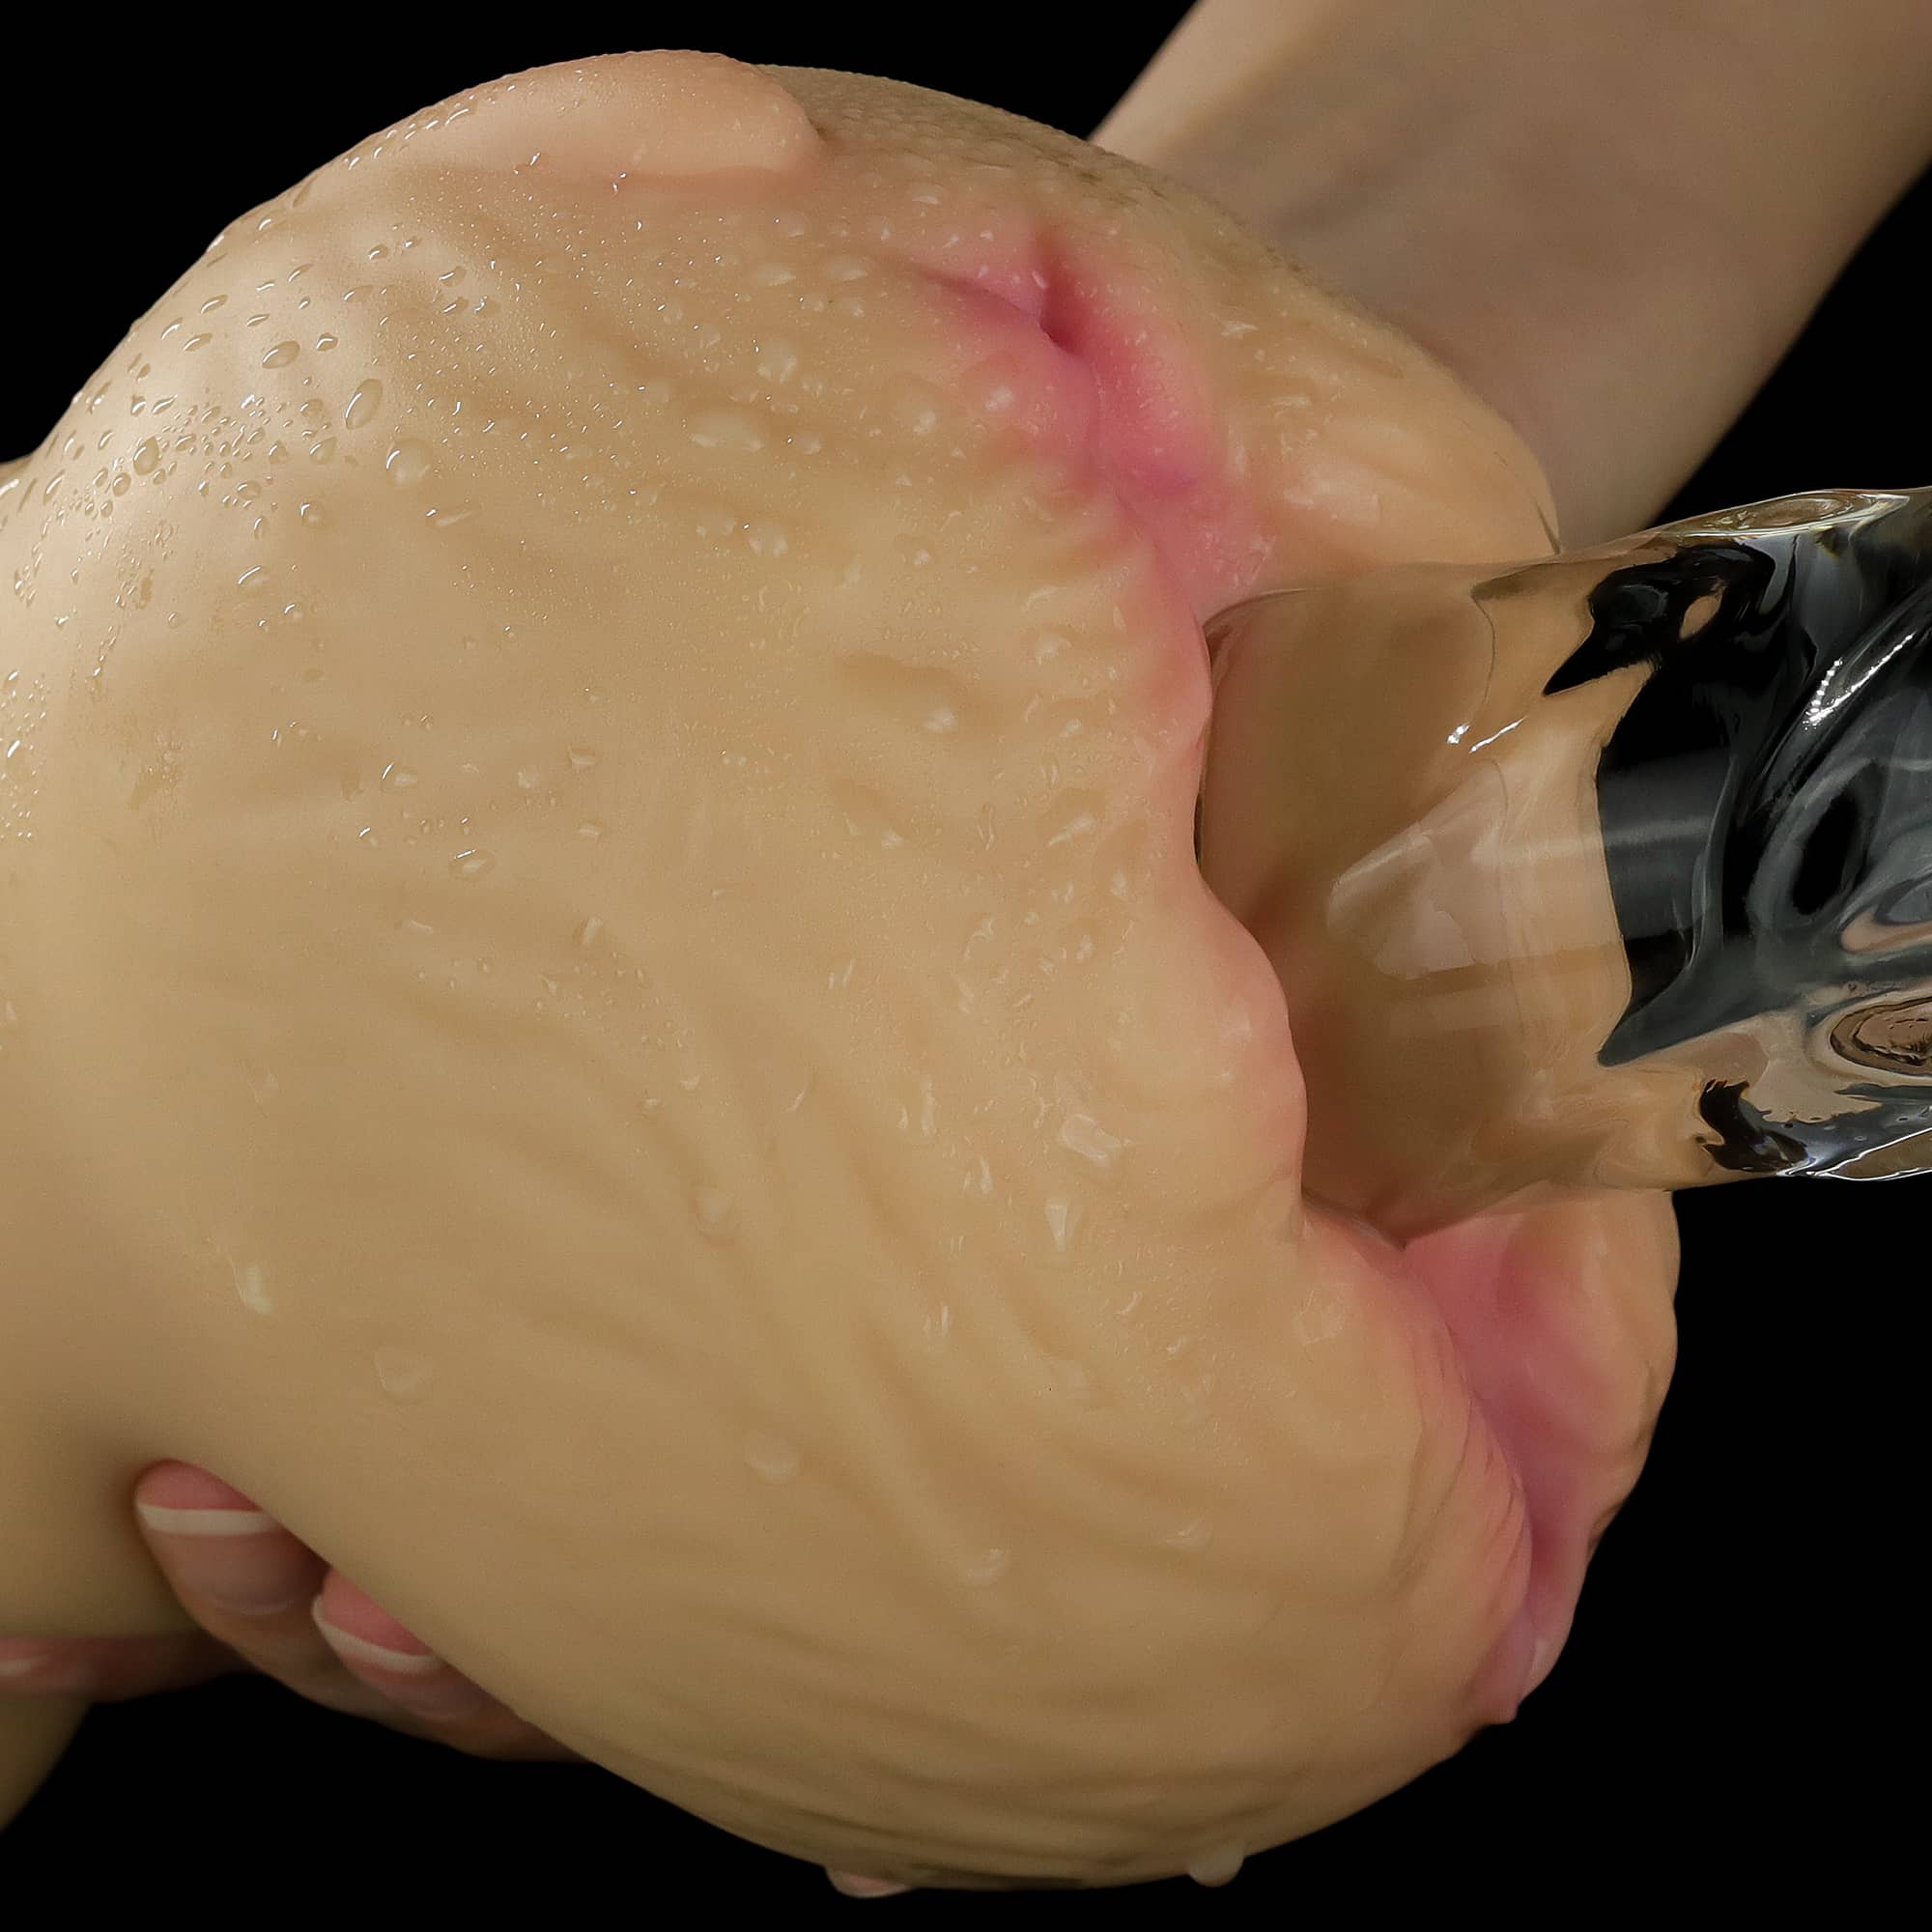 A dildo inserted into the aliens pie male masturbator flesh